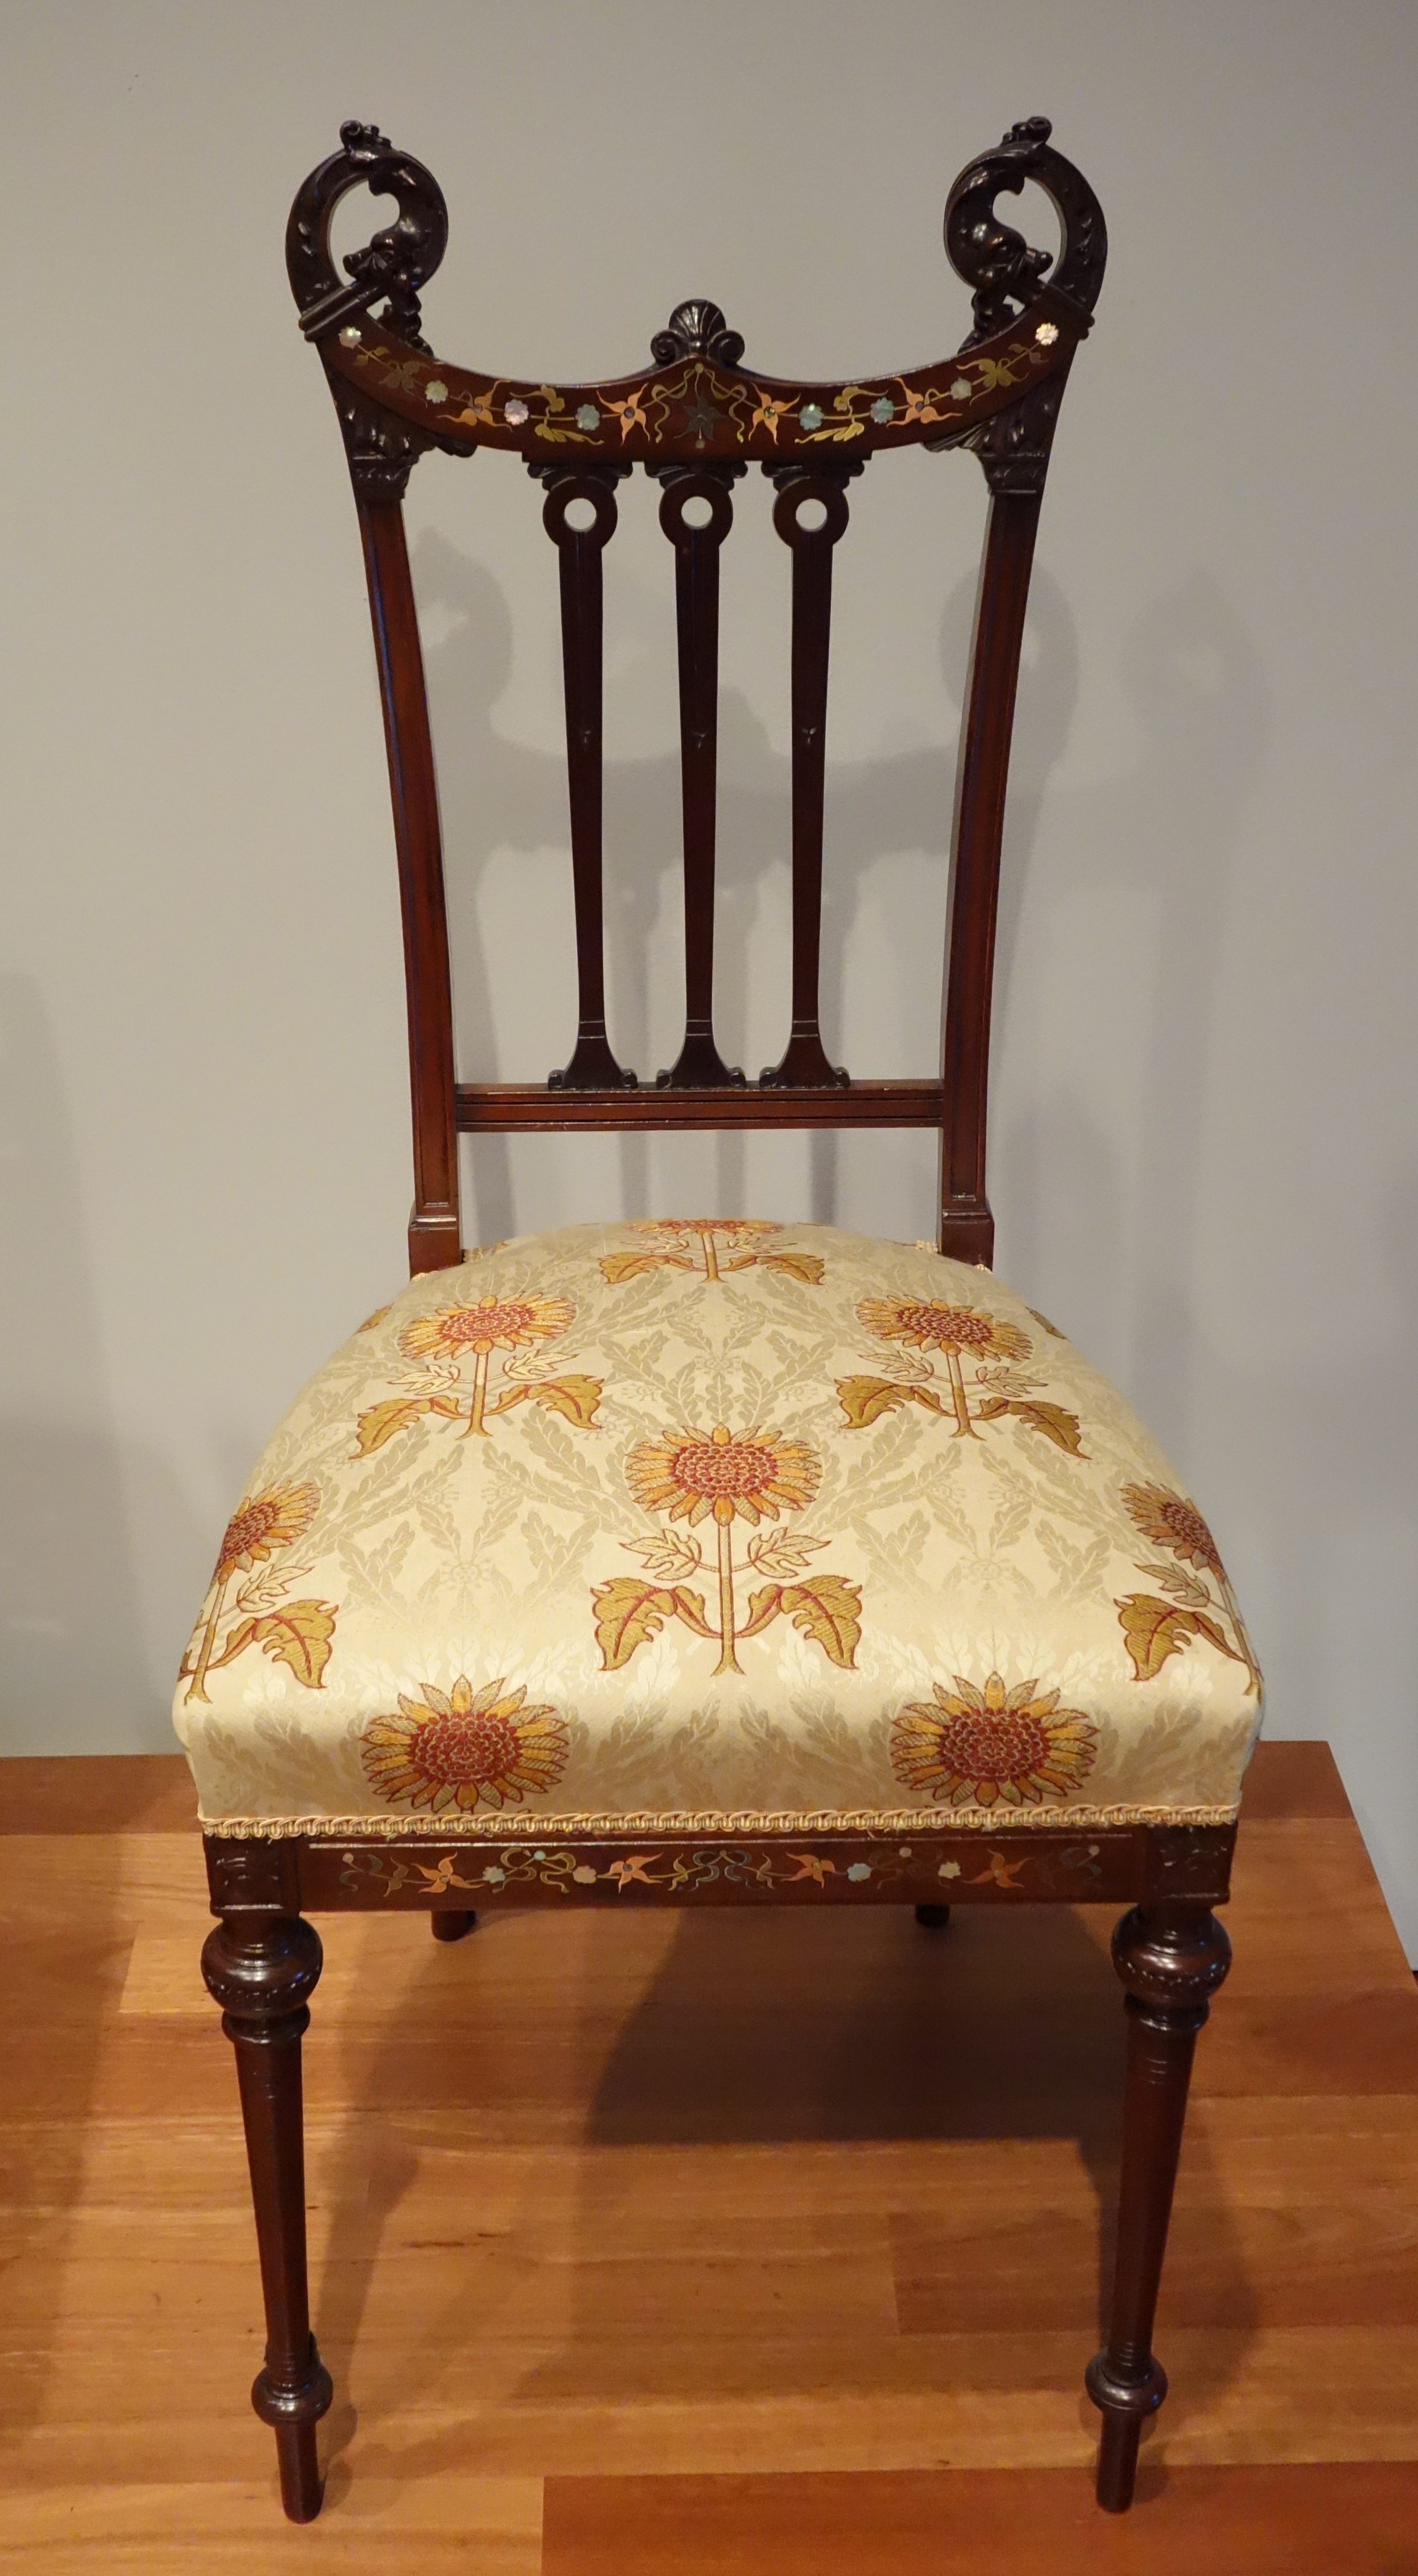 Antique furniture - Wikipedia